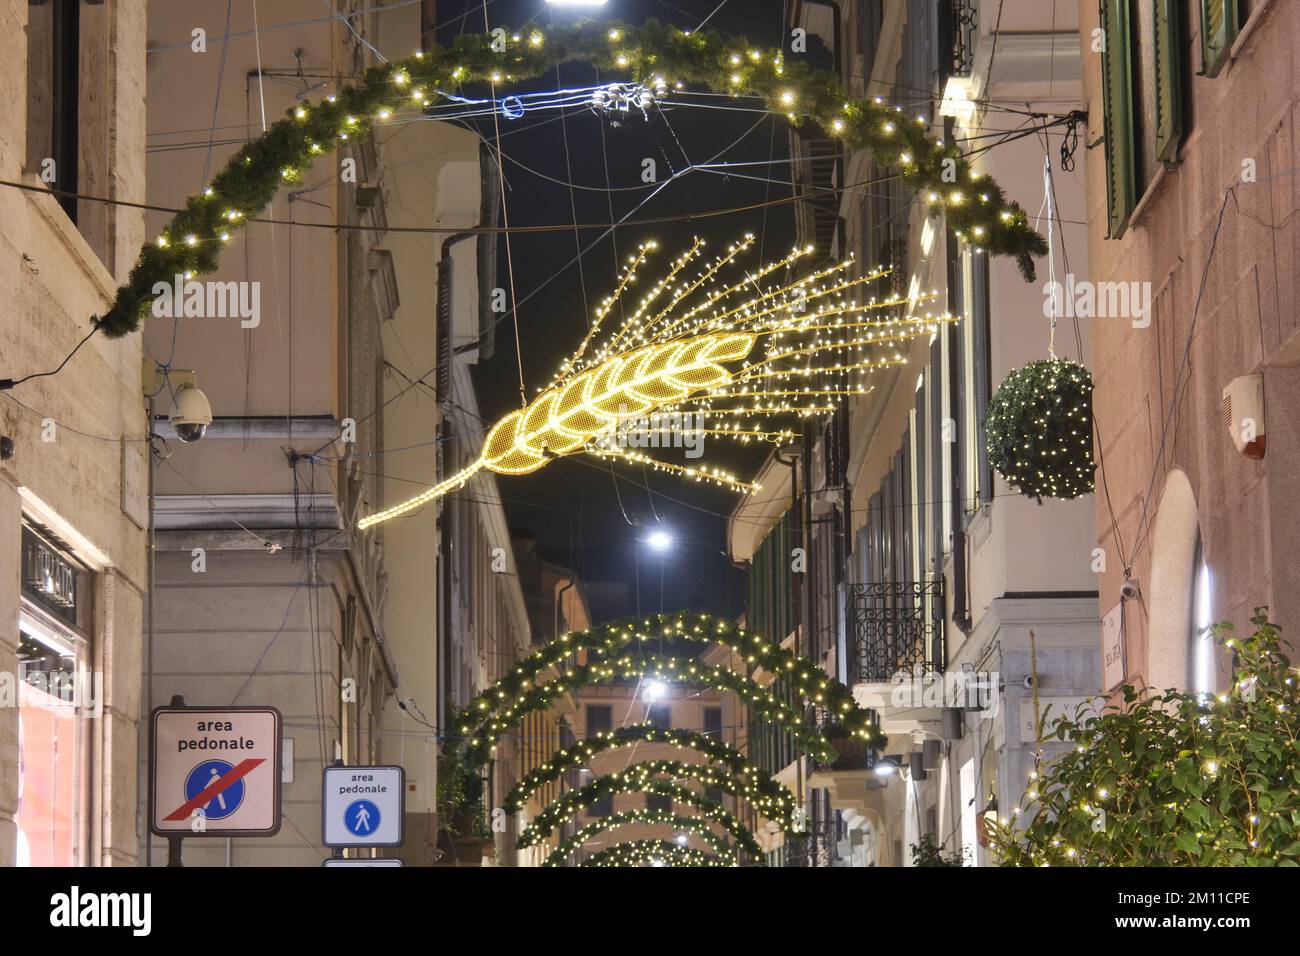 Décorations de Noël dans le quartier de la mode, Montenapoleone, Della Spiga et Del Gesù rue Milan, Lombardie, Italie Banque D'Images